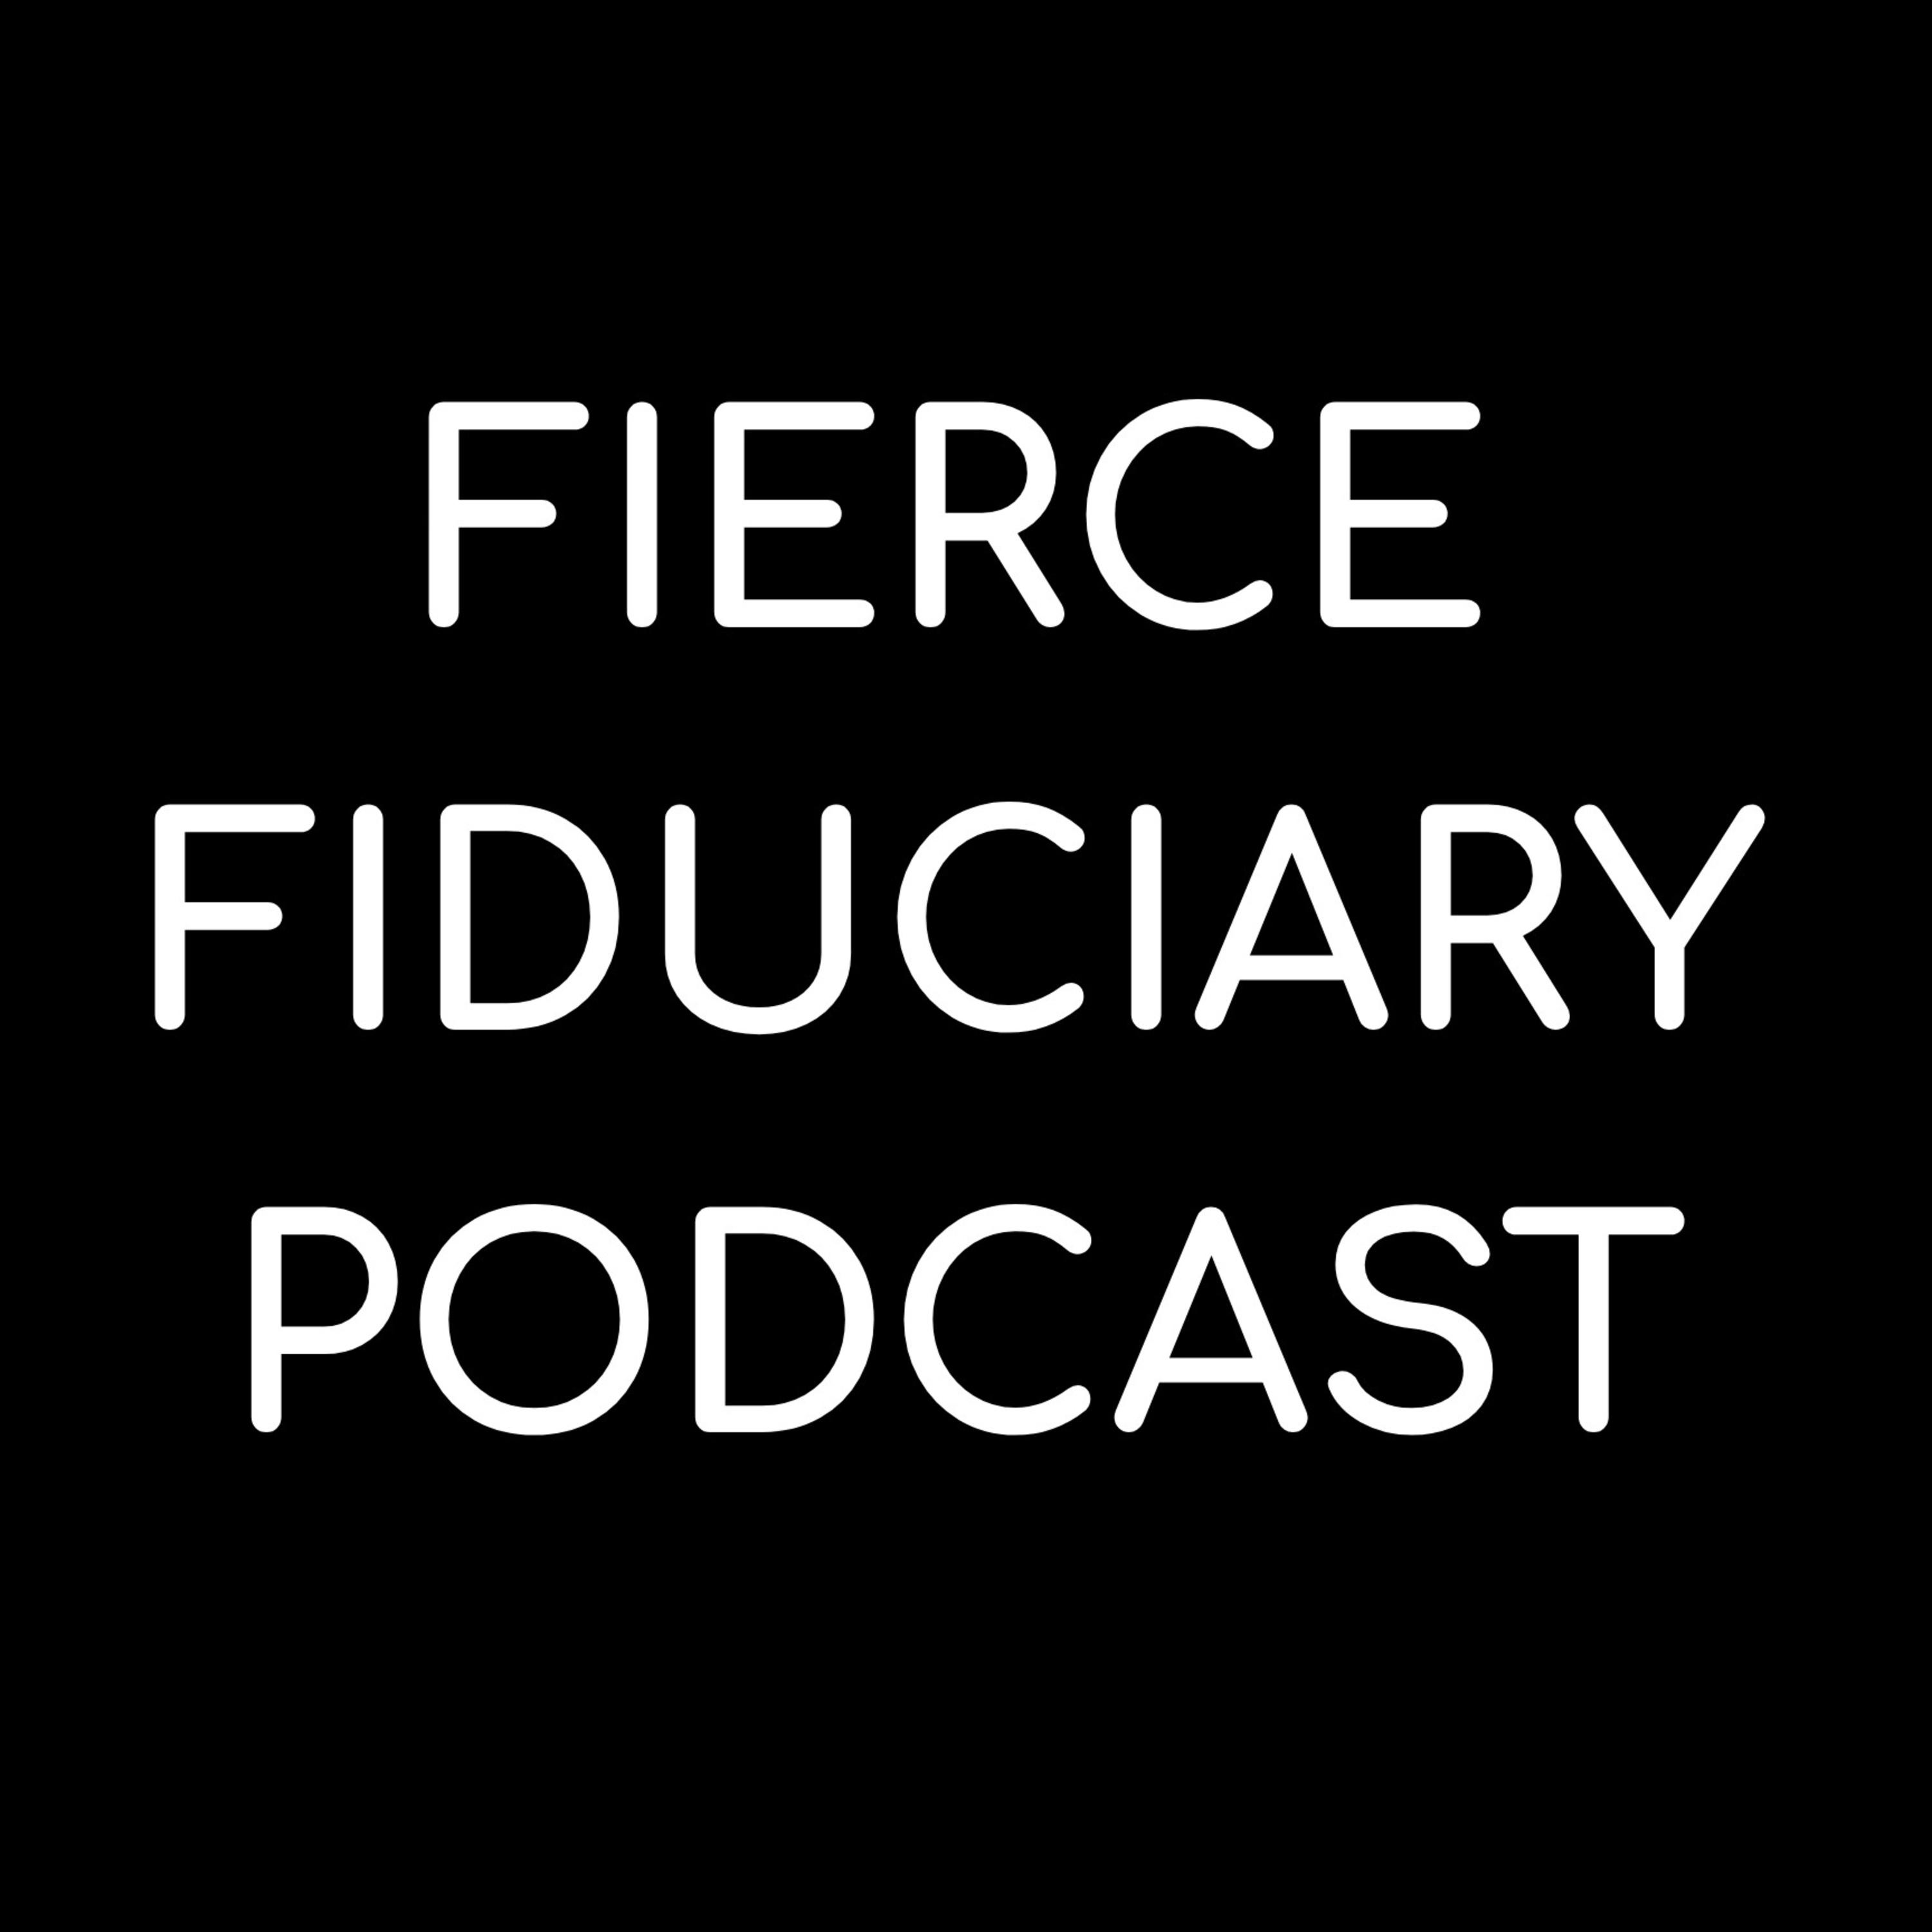 Fierce Fiduciary Podcast